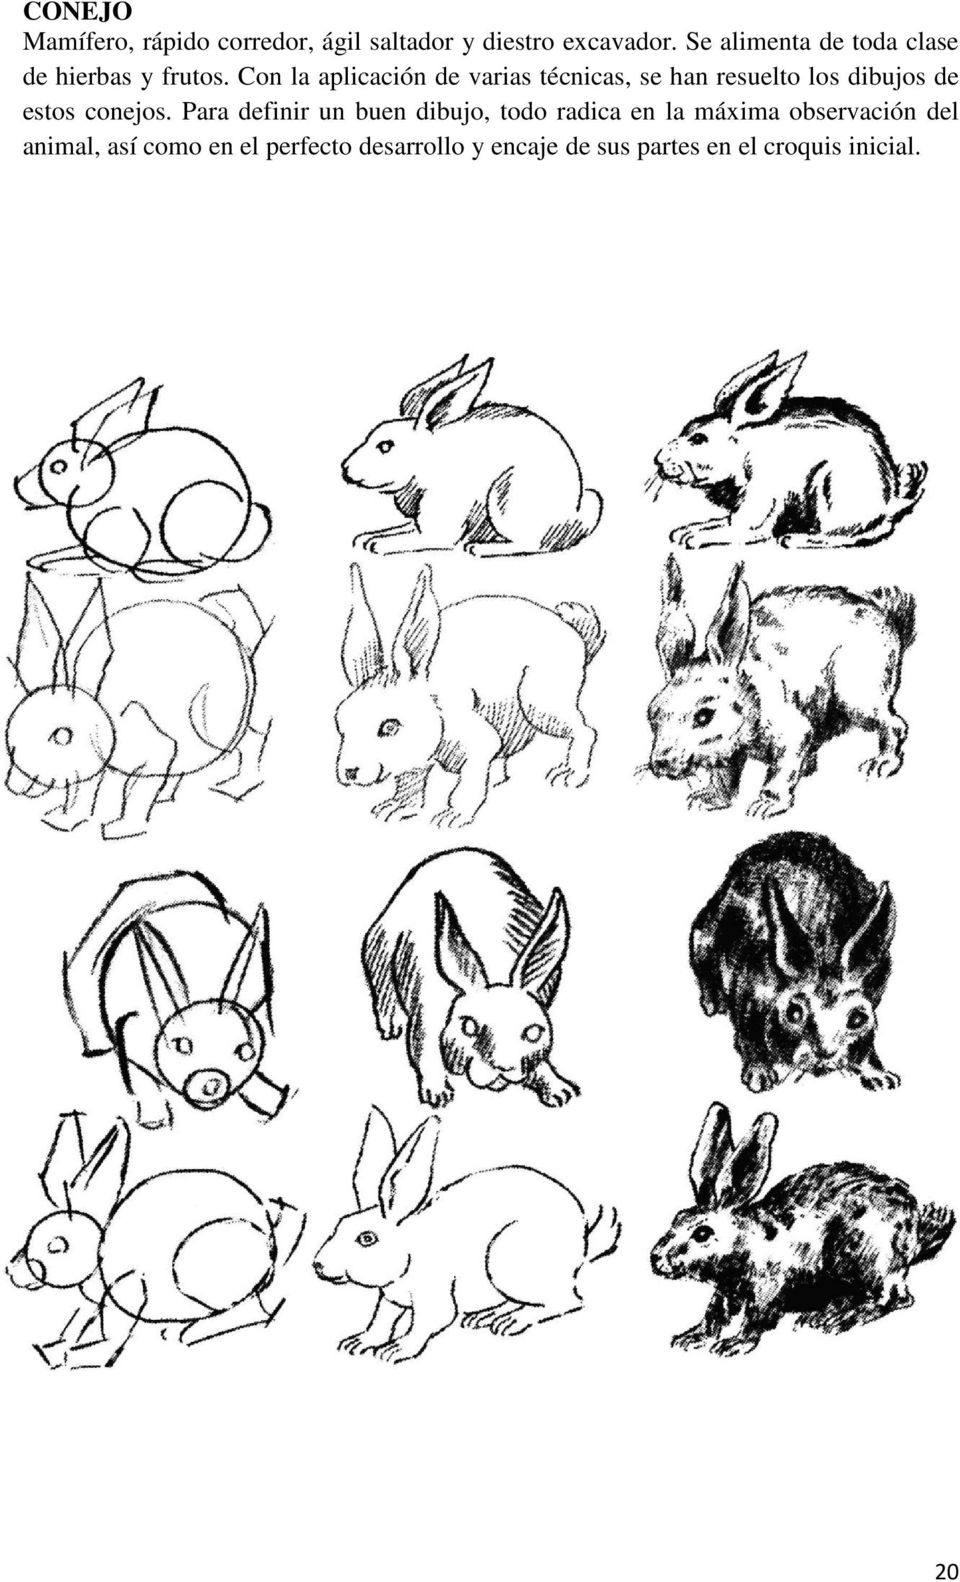 Con la aplicación de varias técnicas, se han resuelto los dibujos de estos conejos.